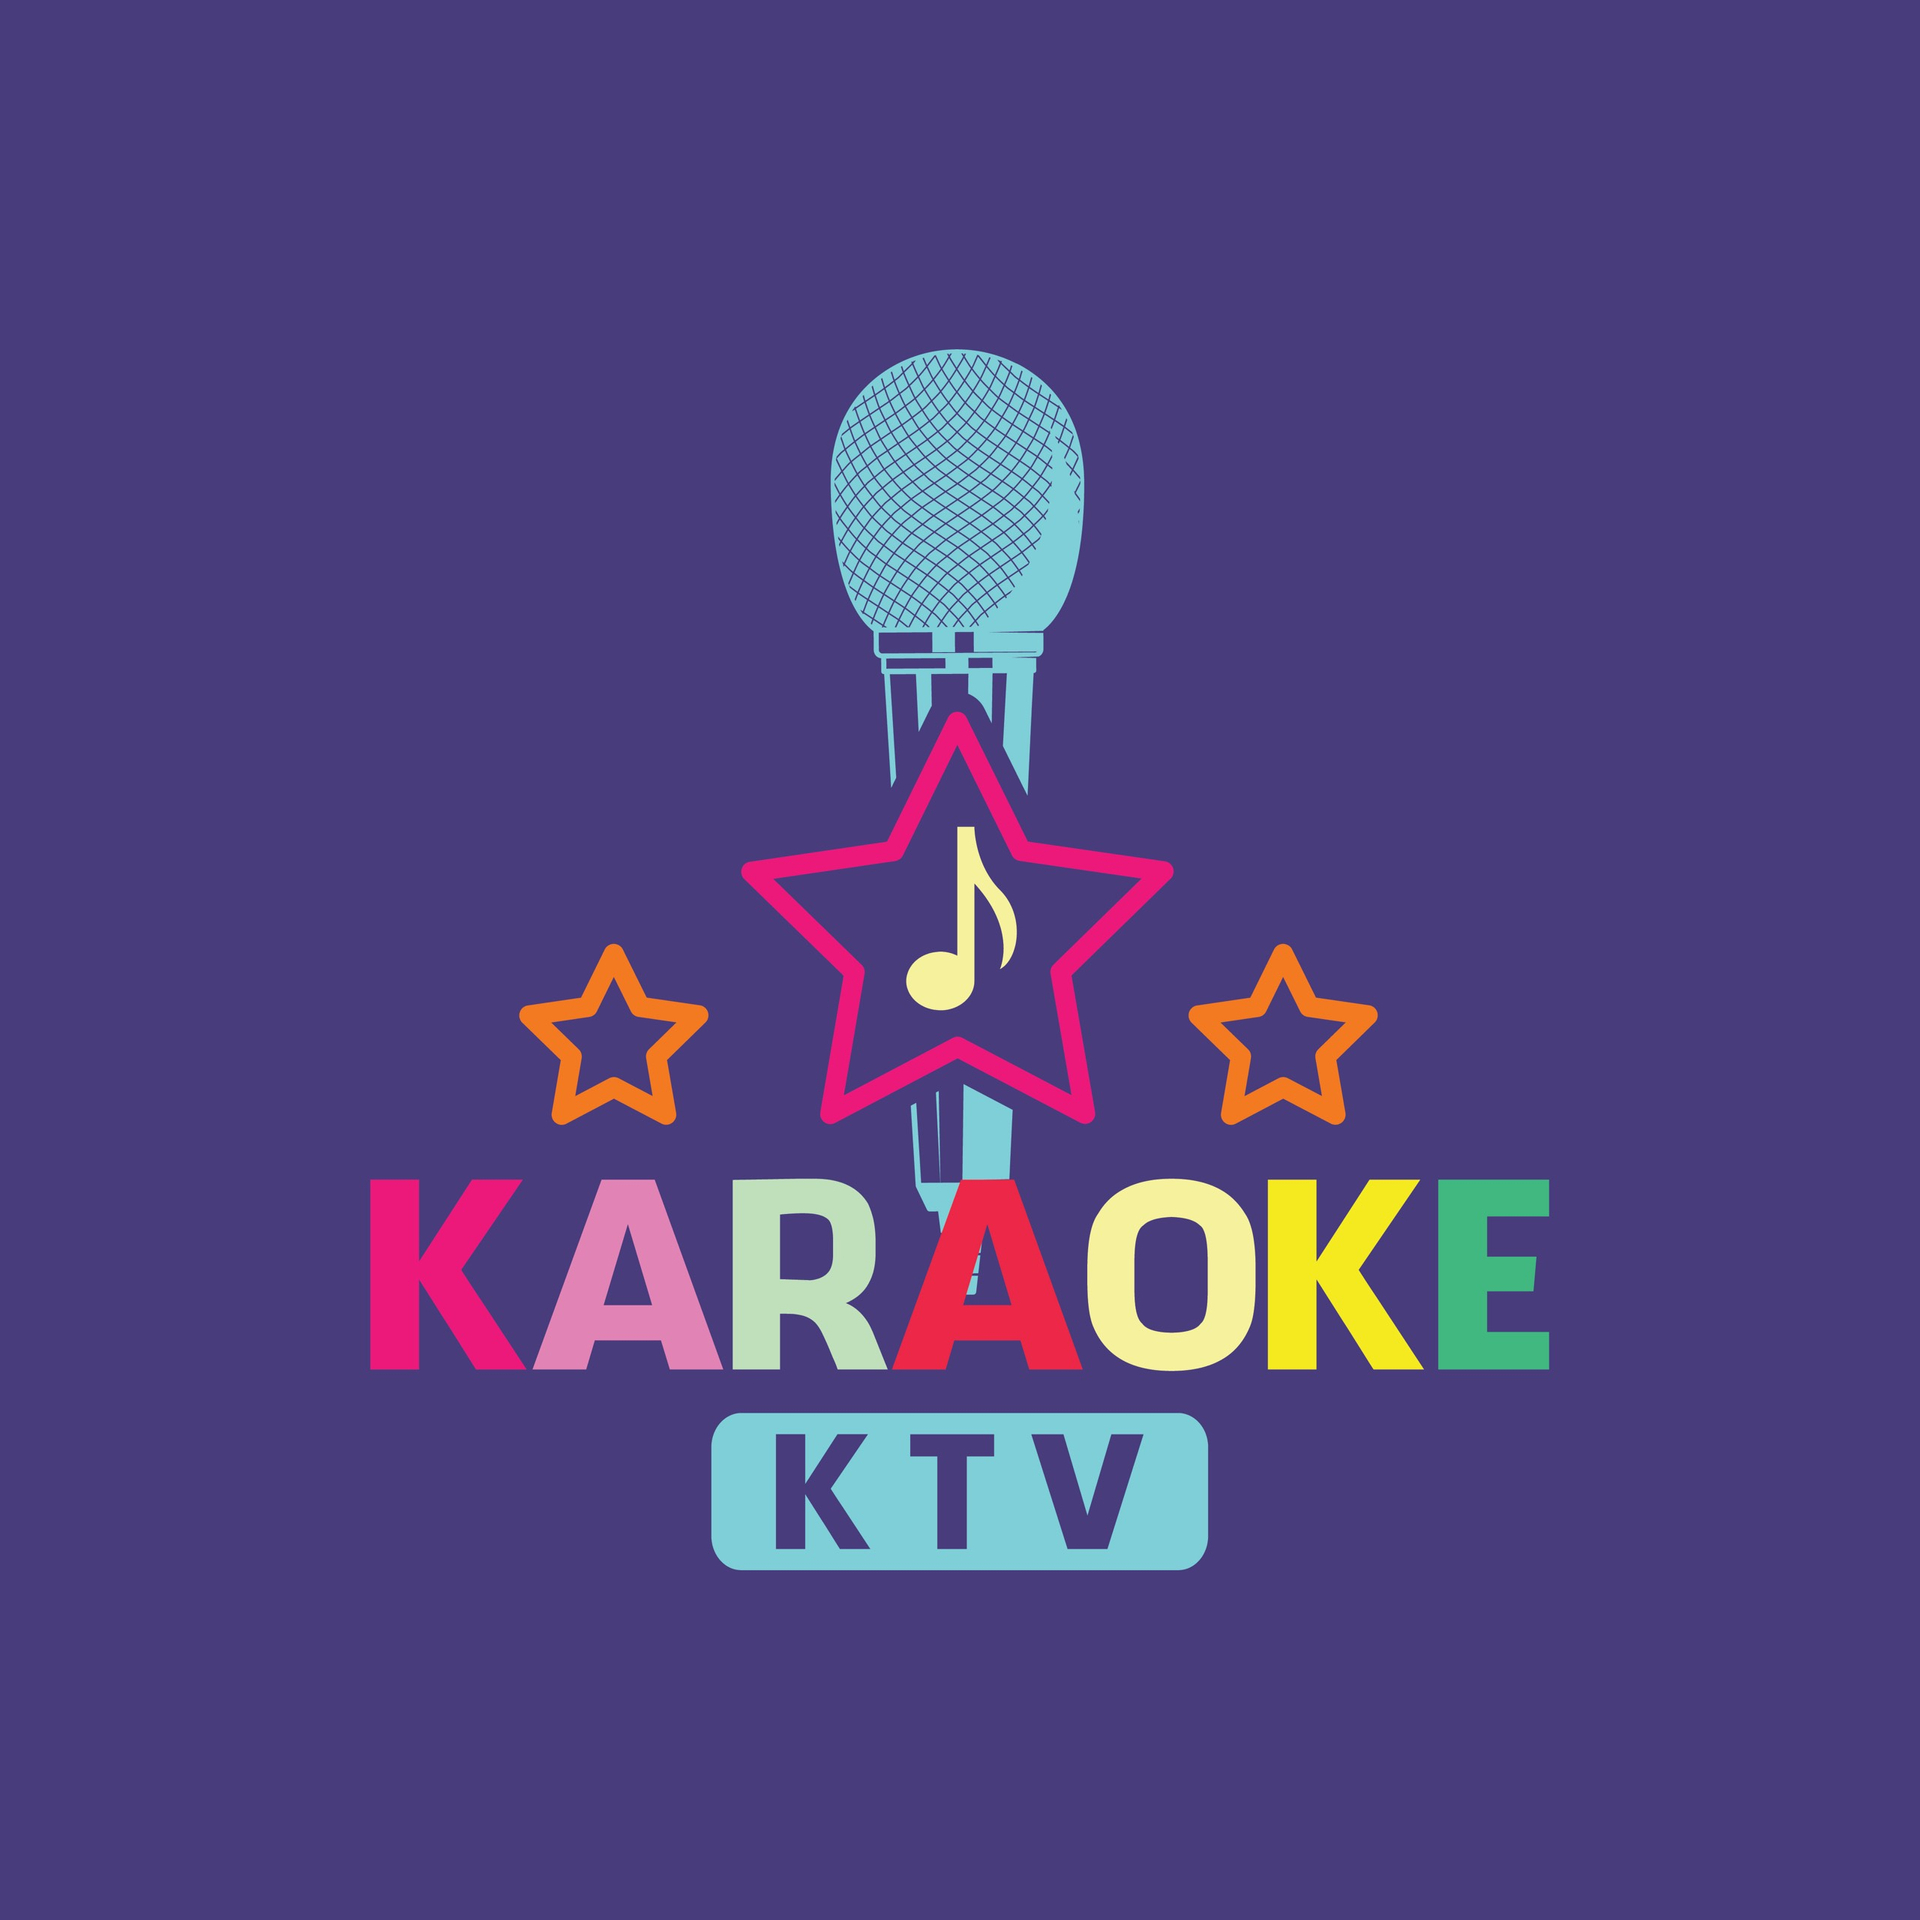 Karaoke KTV Đặt Phòng Nhanh